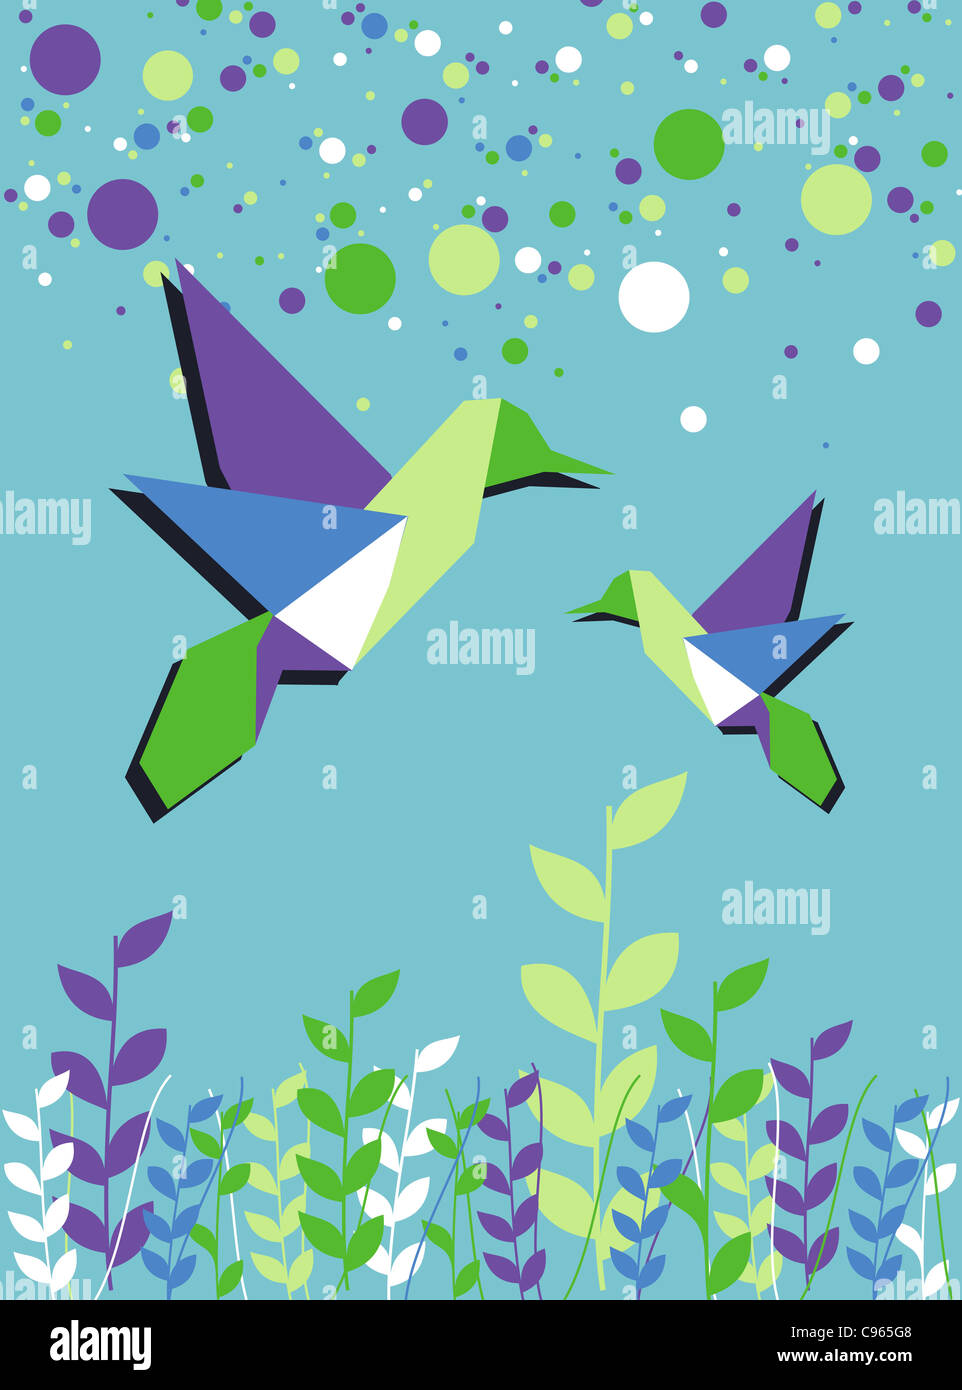 Origami-Kolibri-paar in blauen Farben Paletten-Hintergrund. Vektor-Datei zur Verfügung. Stockfoto